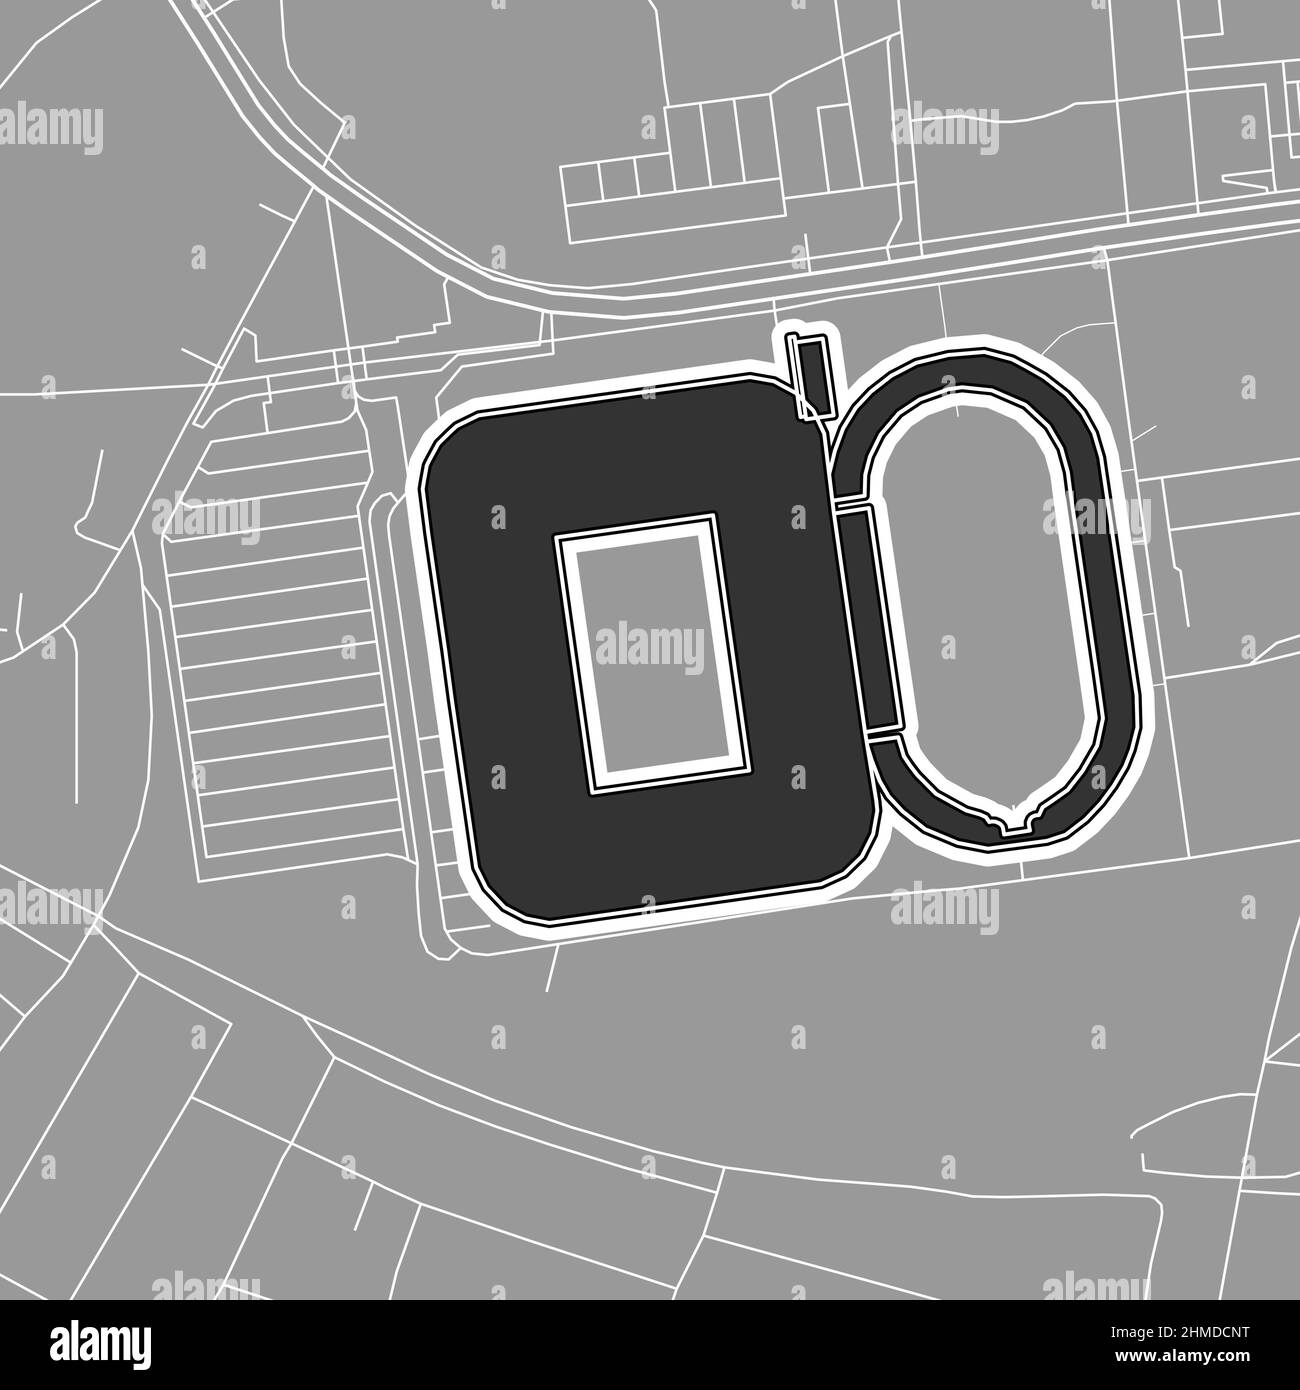 Dortmund, stade de baseball MLB, carte vectorielle. La carte du statium de base-ball a été tracée avec des zones blanches et des lignes pour les routes principales, les routes latérales. Illustration de Vecteur